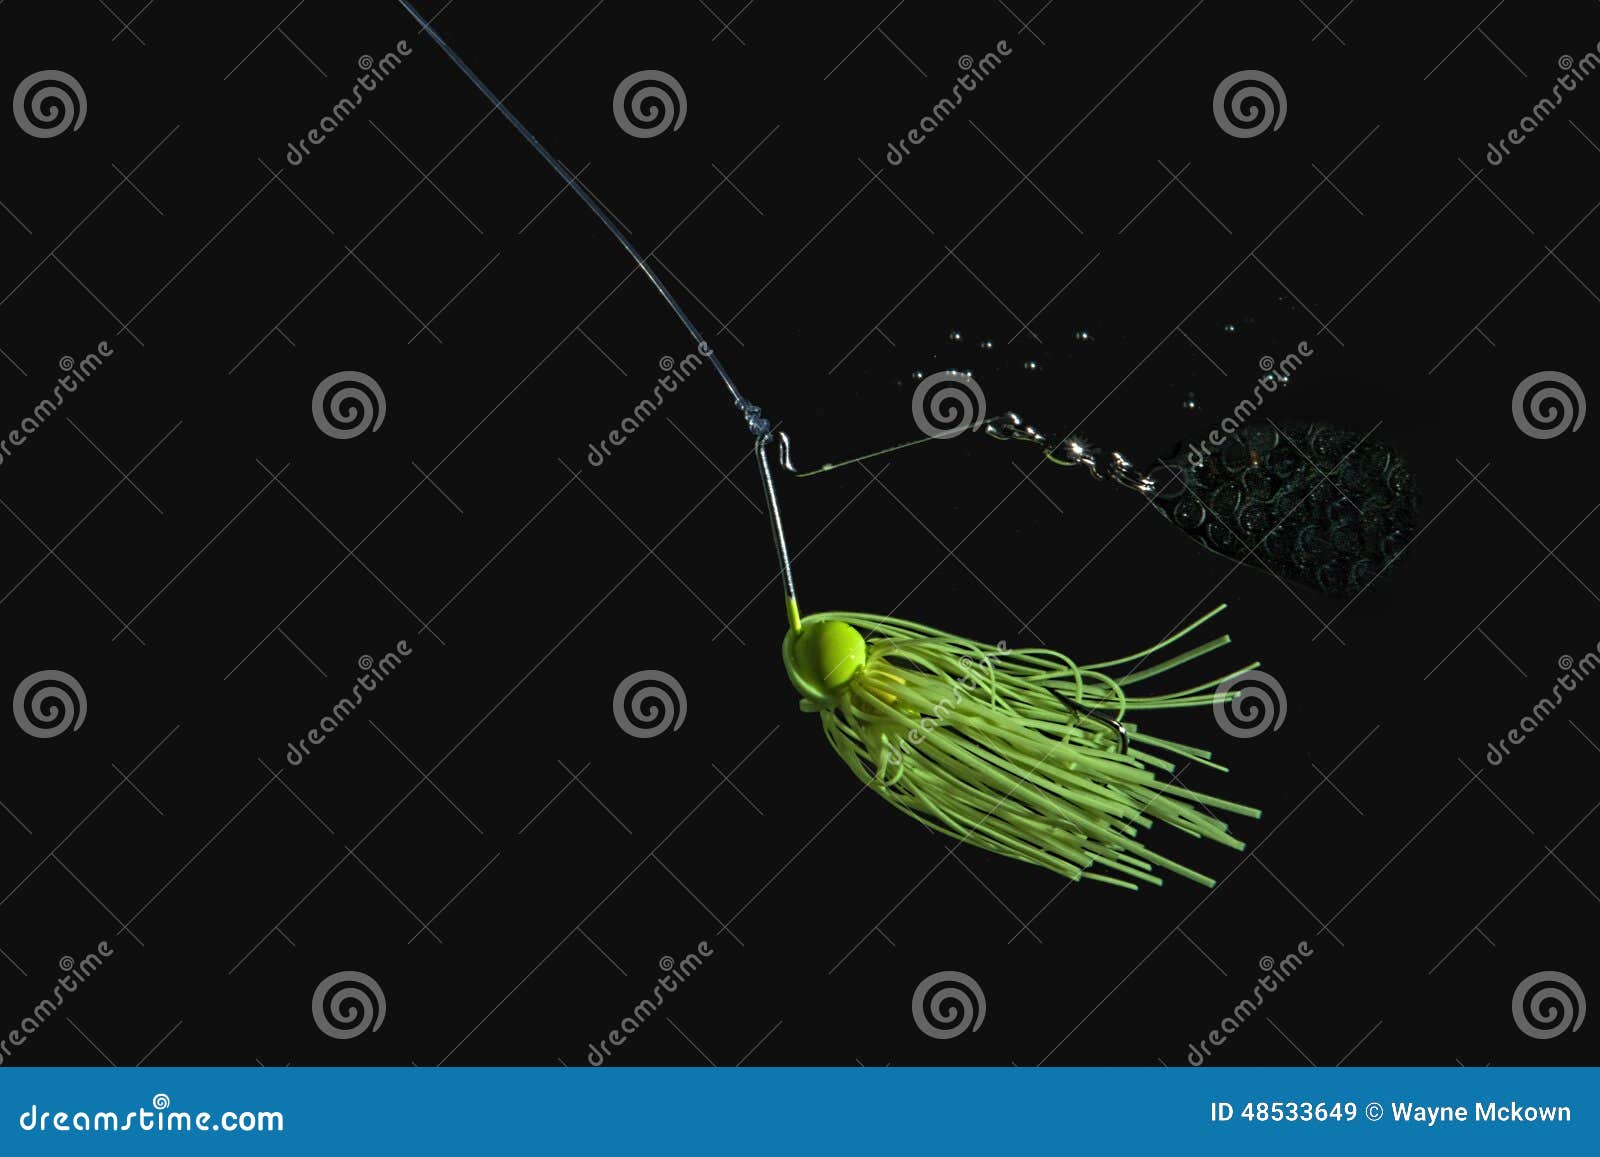 green spinner fishing bait